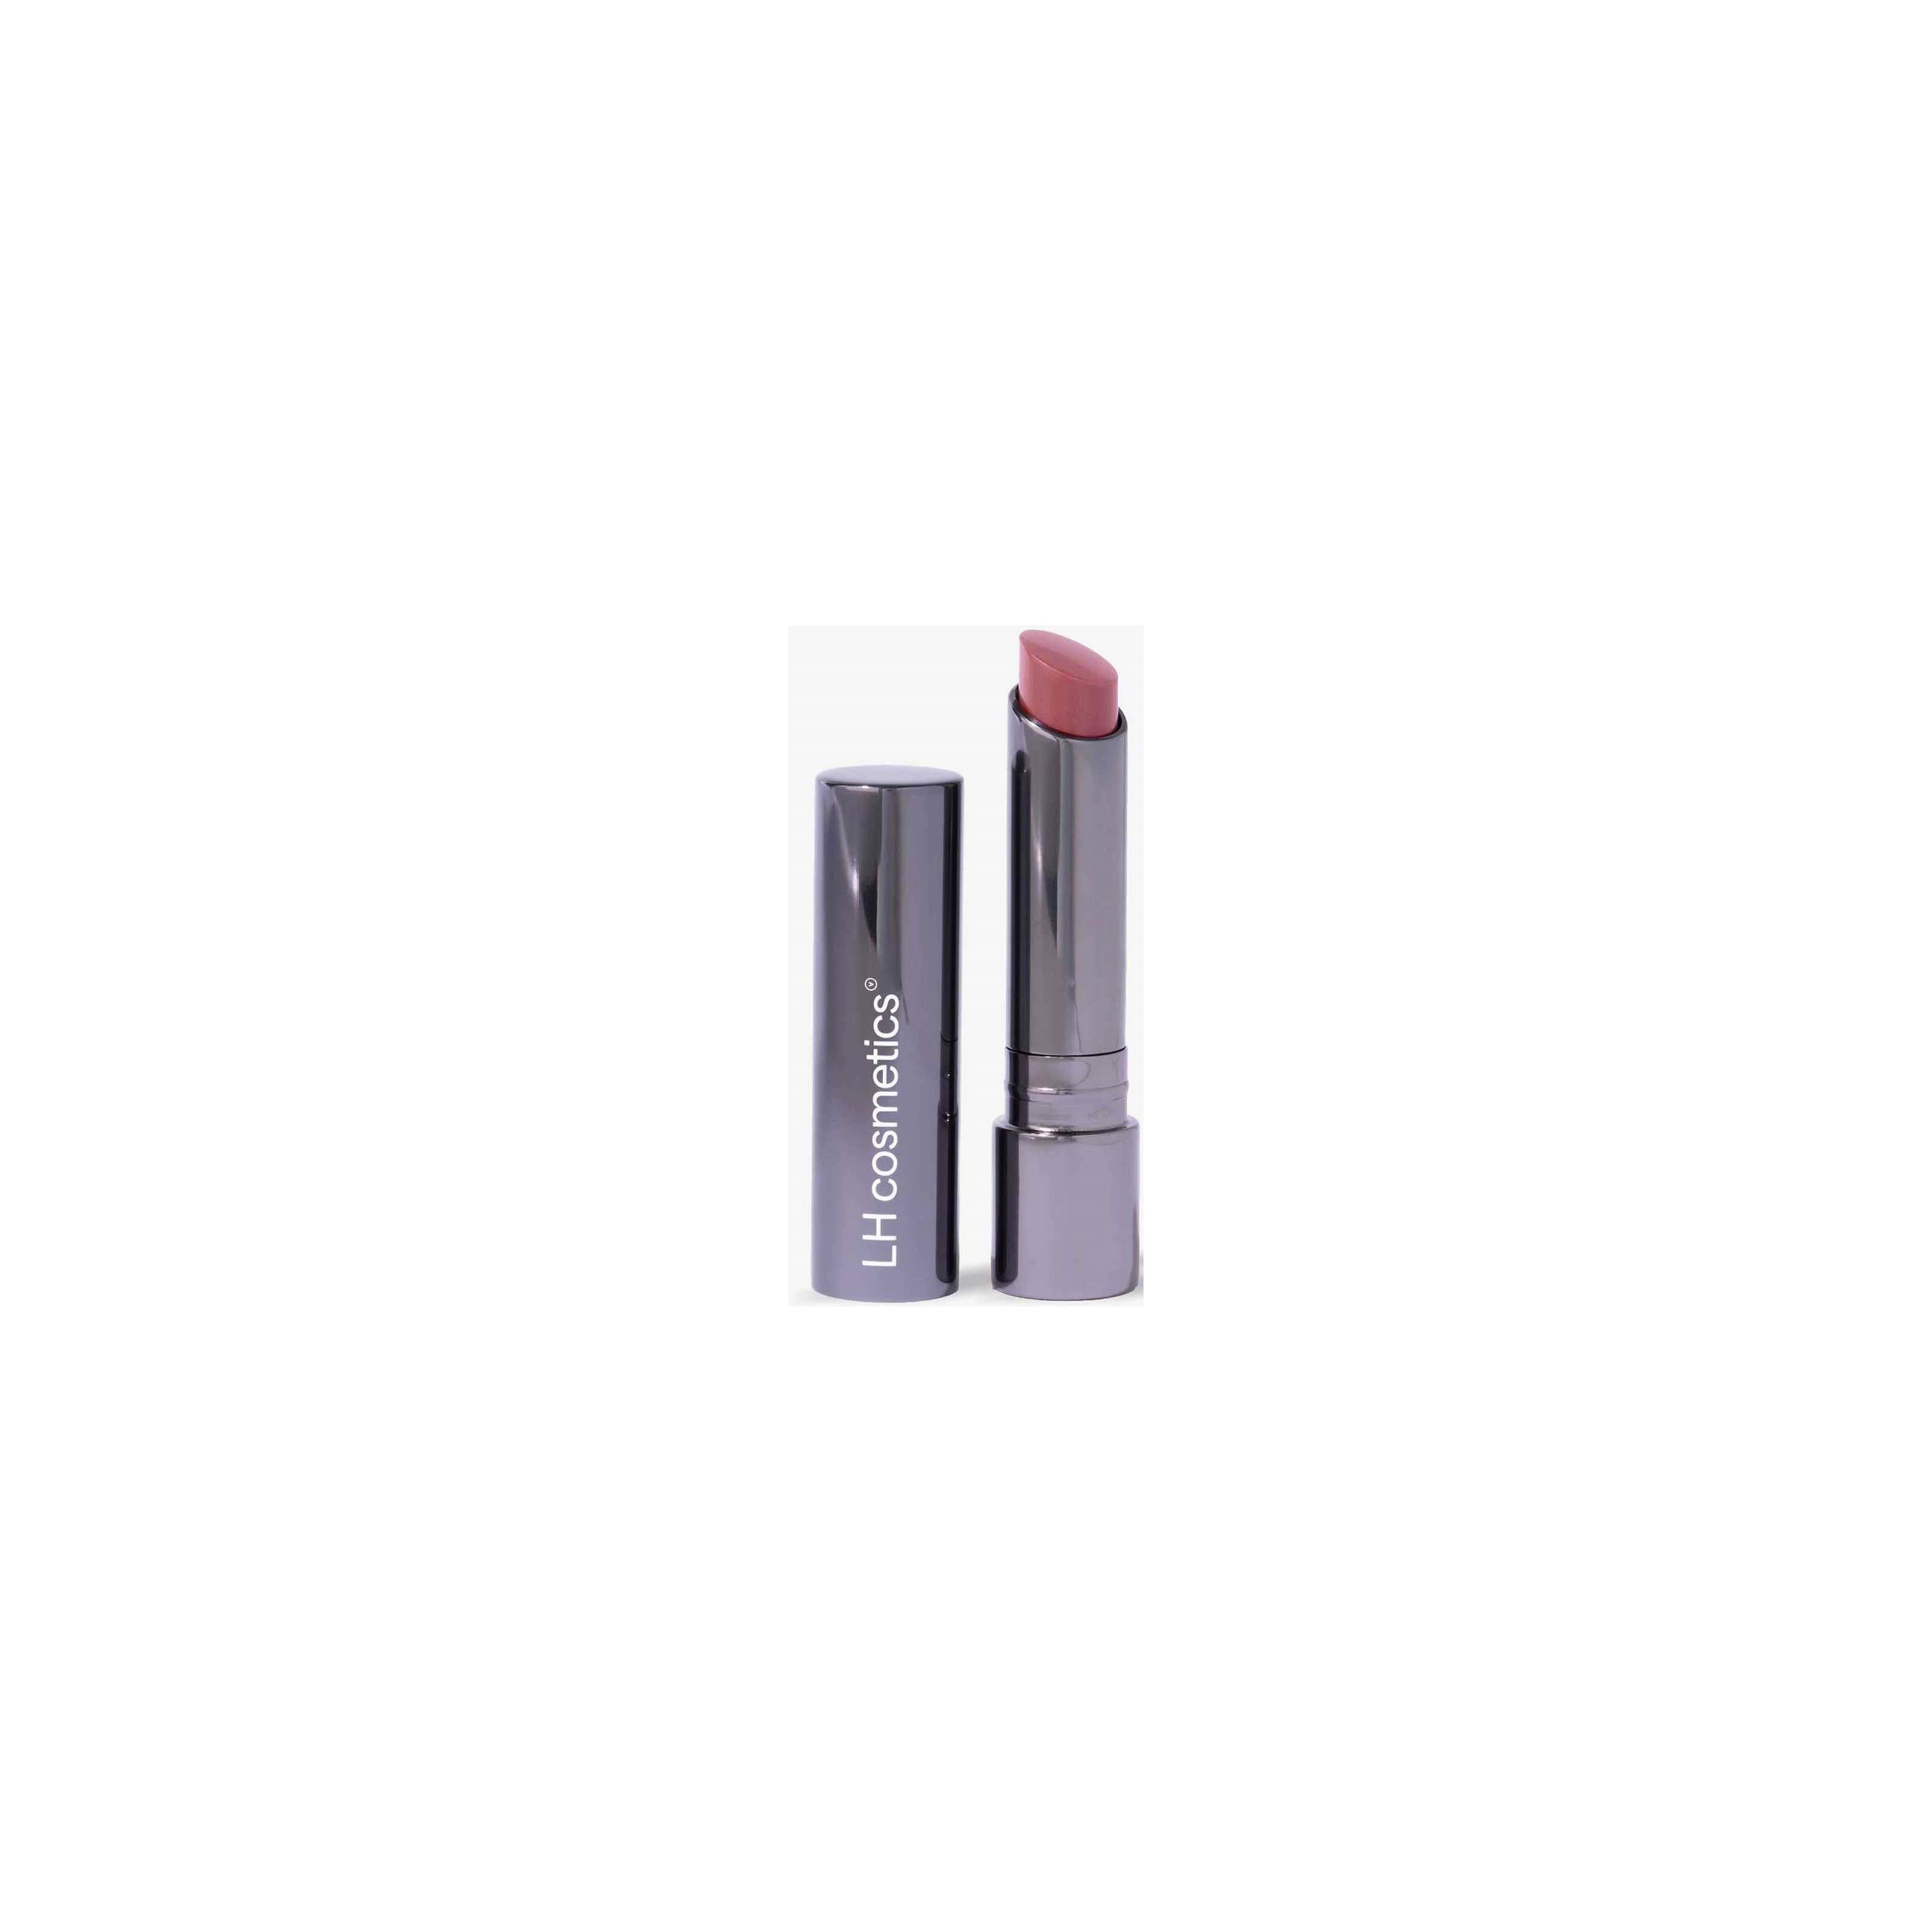 LH cosmetics Fantastick Multi-use Lipstick SPF15 Goldstone